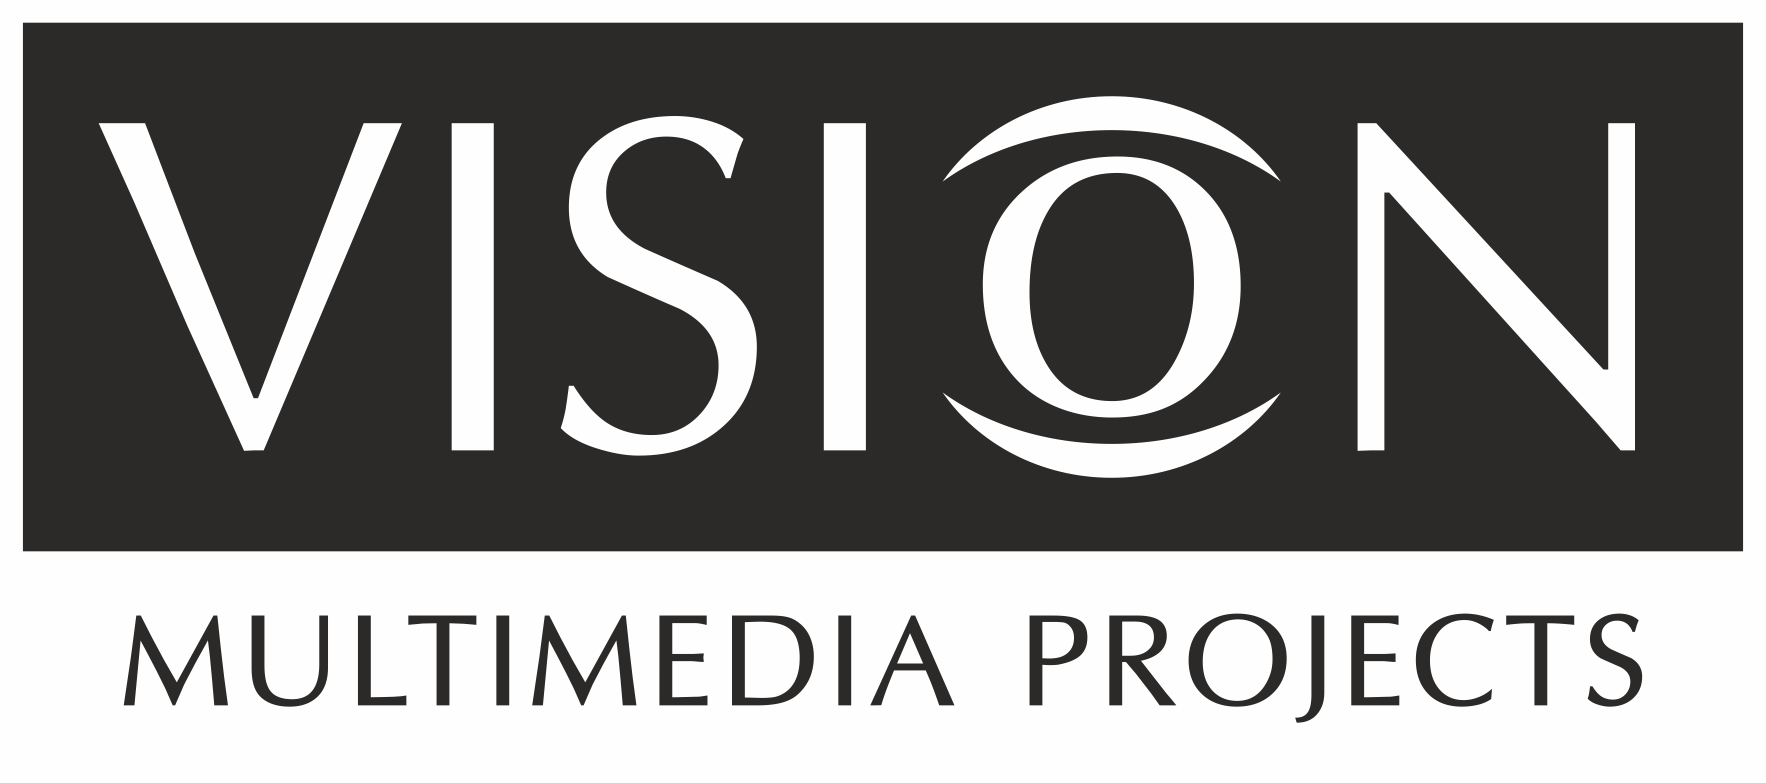 VISION_2 logo